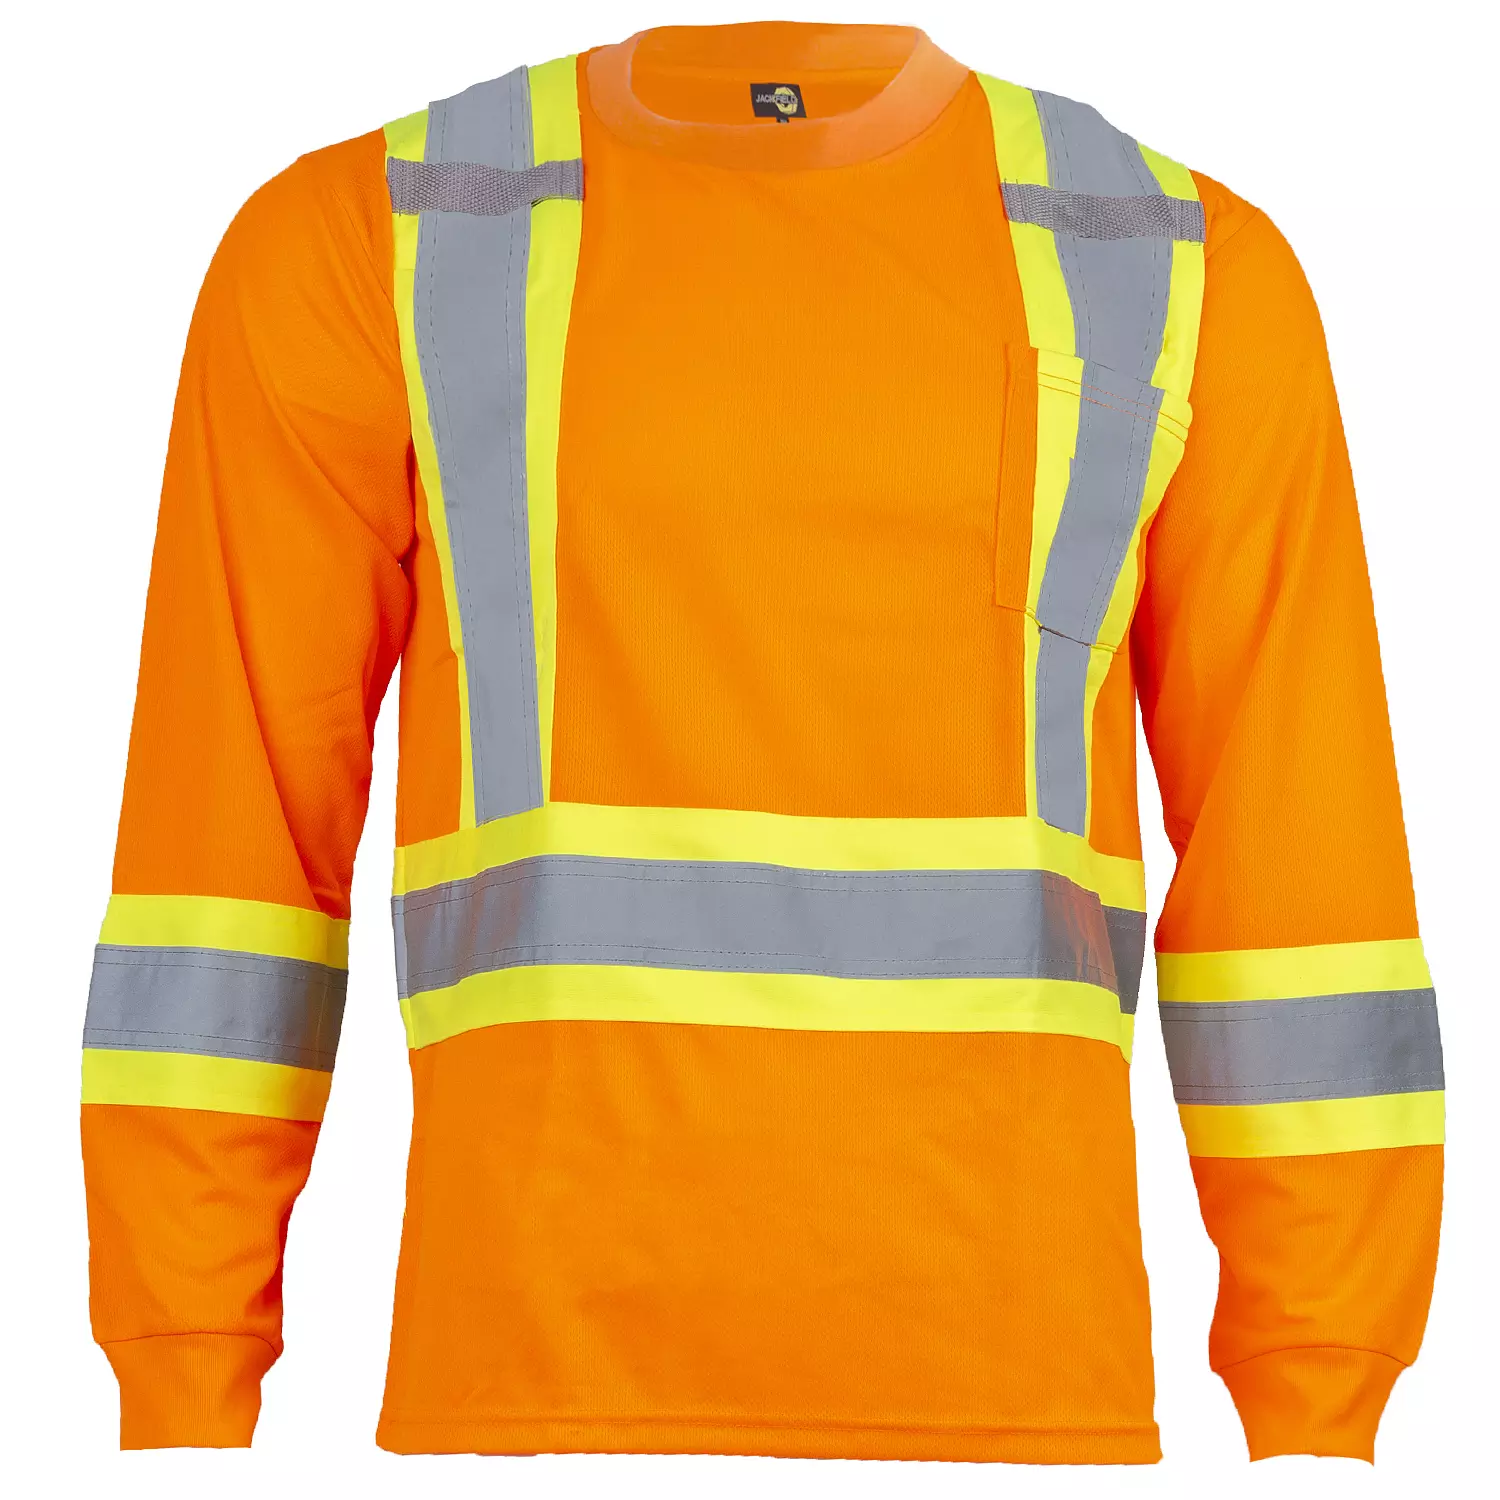 Jackfield - T-shirt manches longues, haute visibilité, orange, moyen (M)